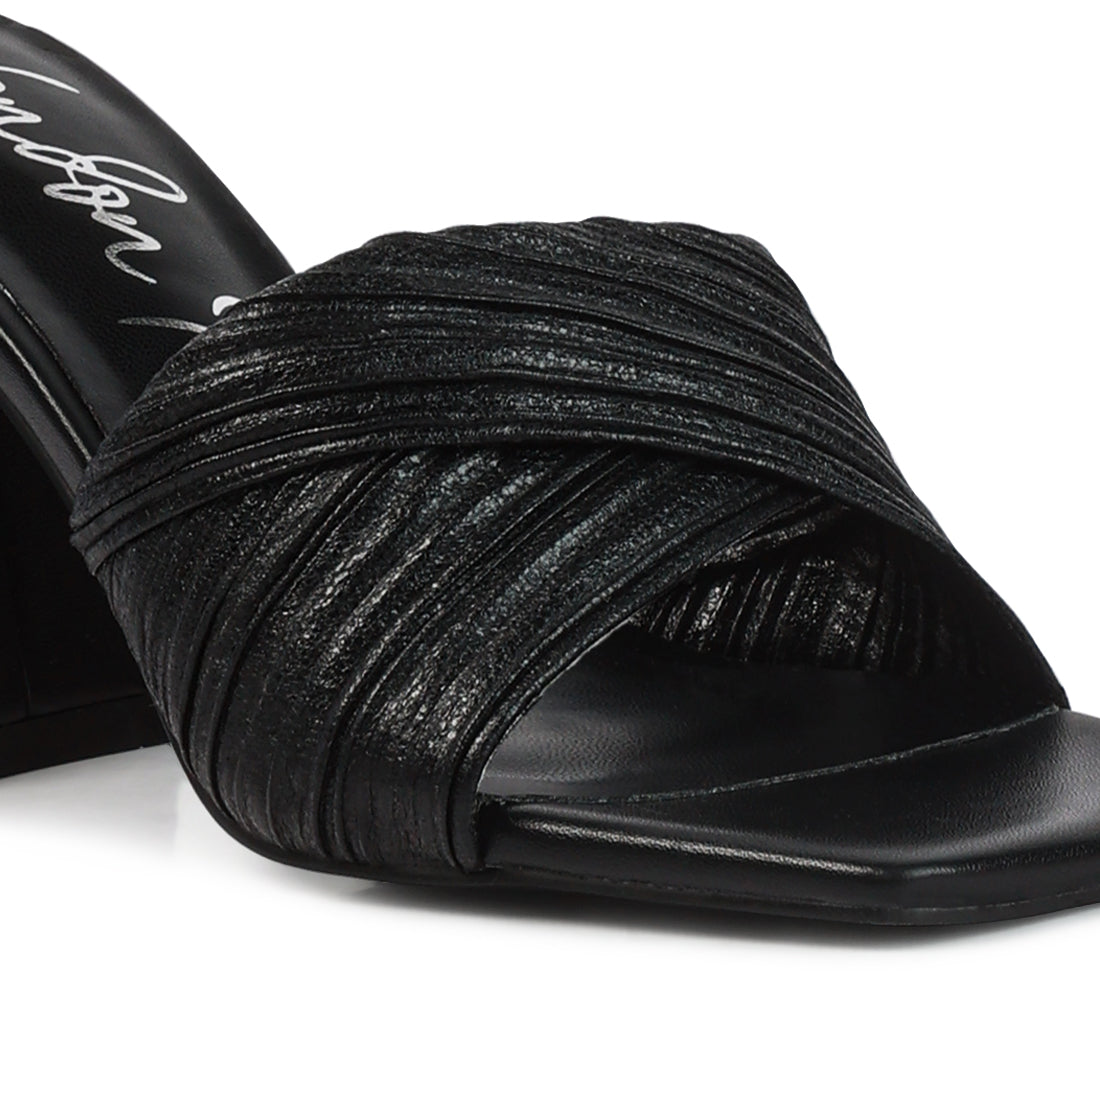 Black Crinkled High Heeled Block Sandals